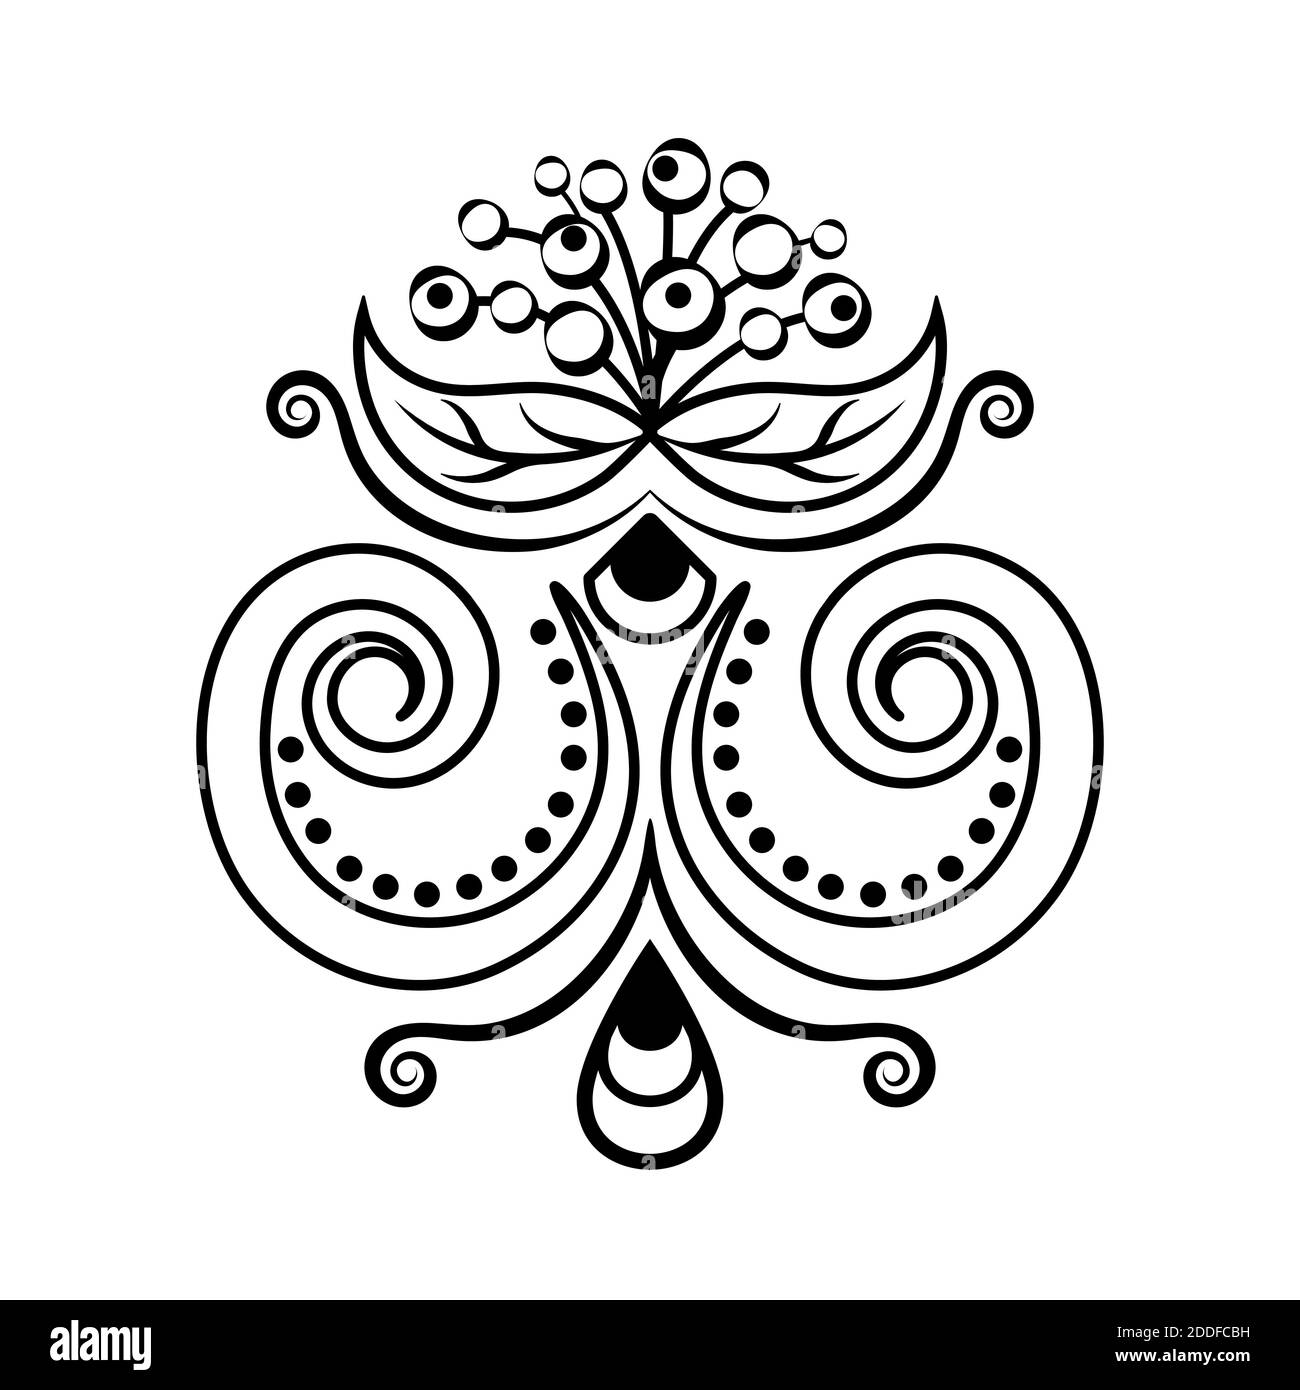 Décoration florale abstraite, motif ethnique, dessin noir et blanc avec boucles, spirales, fleurs, éléments décoratifs, imprimé, tatouage, coloriage Illustration de Vecteur